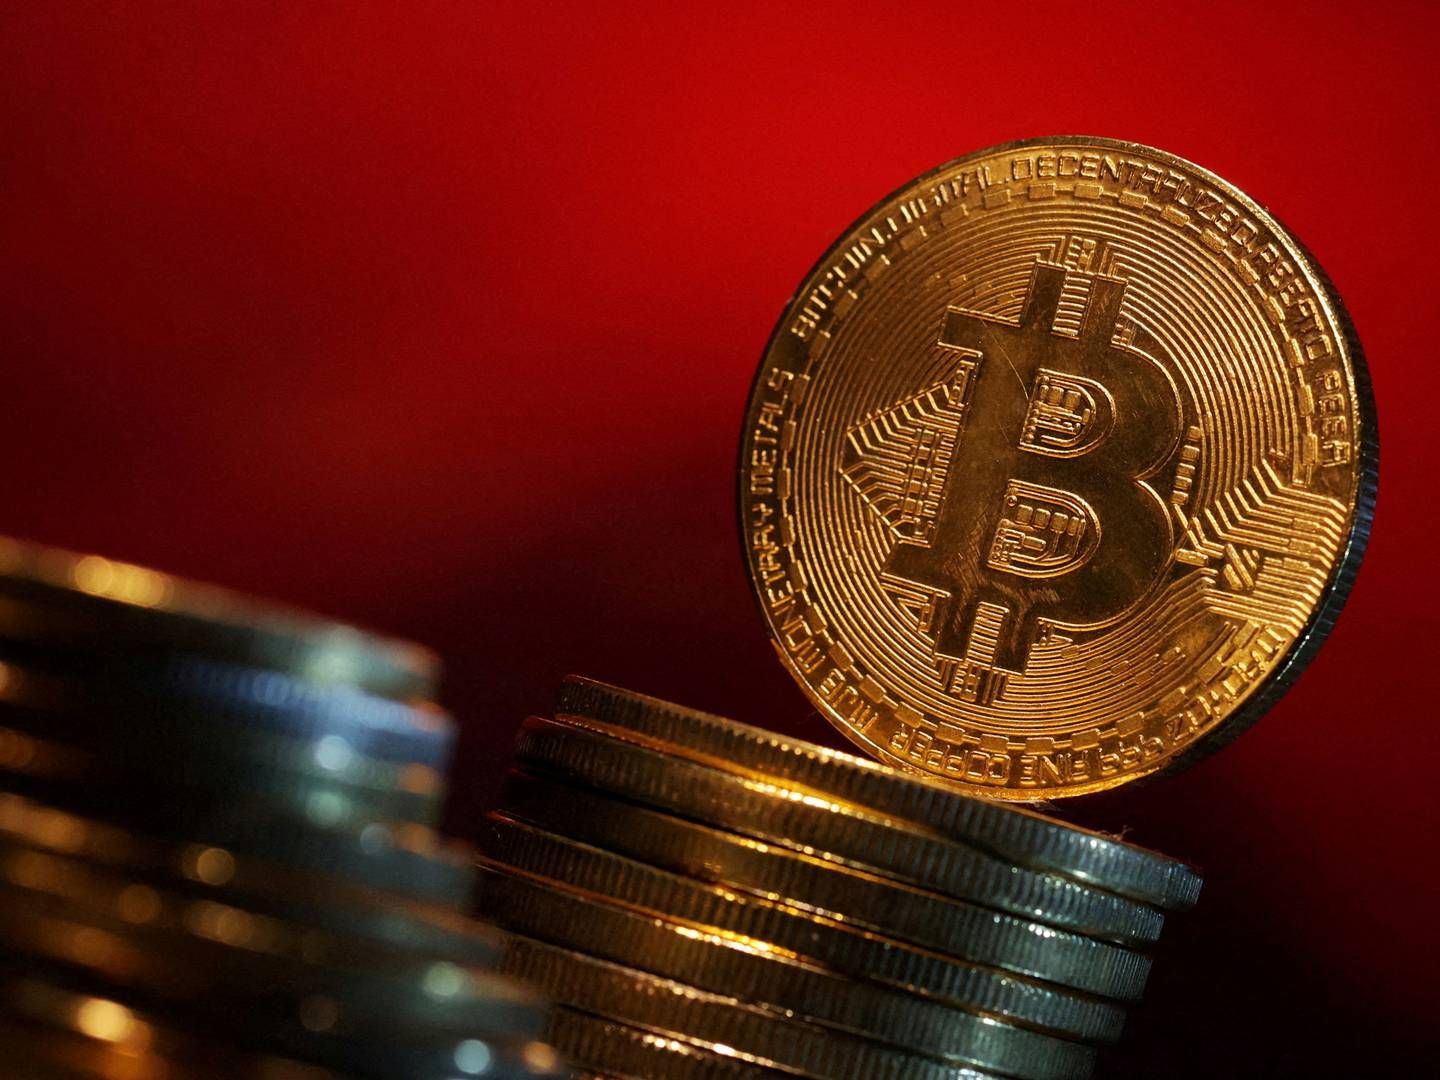 Bitcoin ramte i marts en rekordpris på 73.803 dollar - omkring 516.000 kroner. | Foto: Dado Ruvic